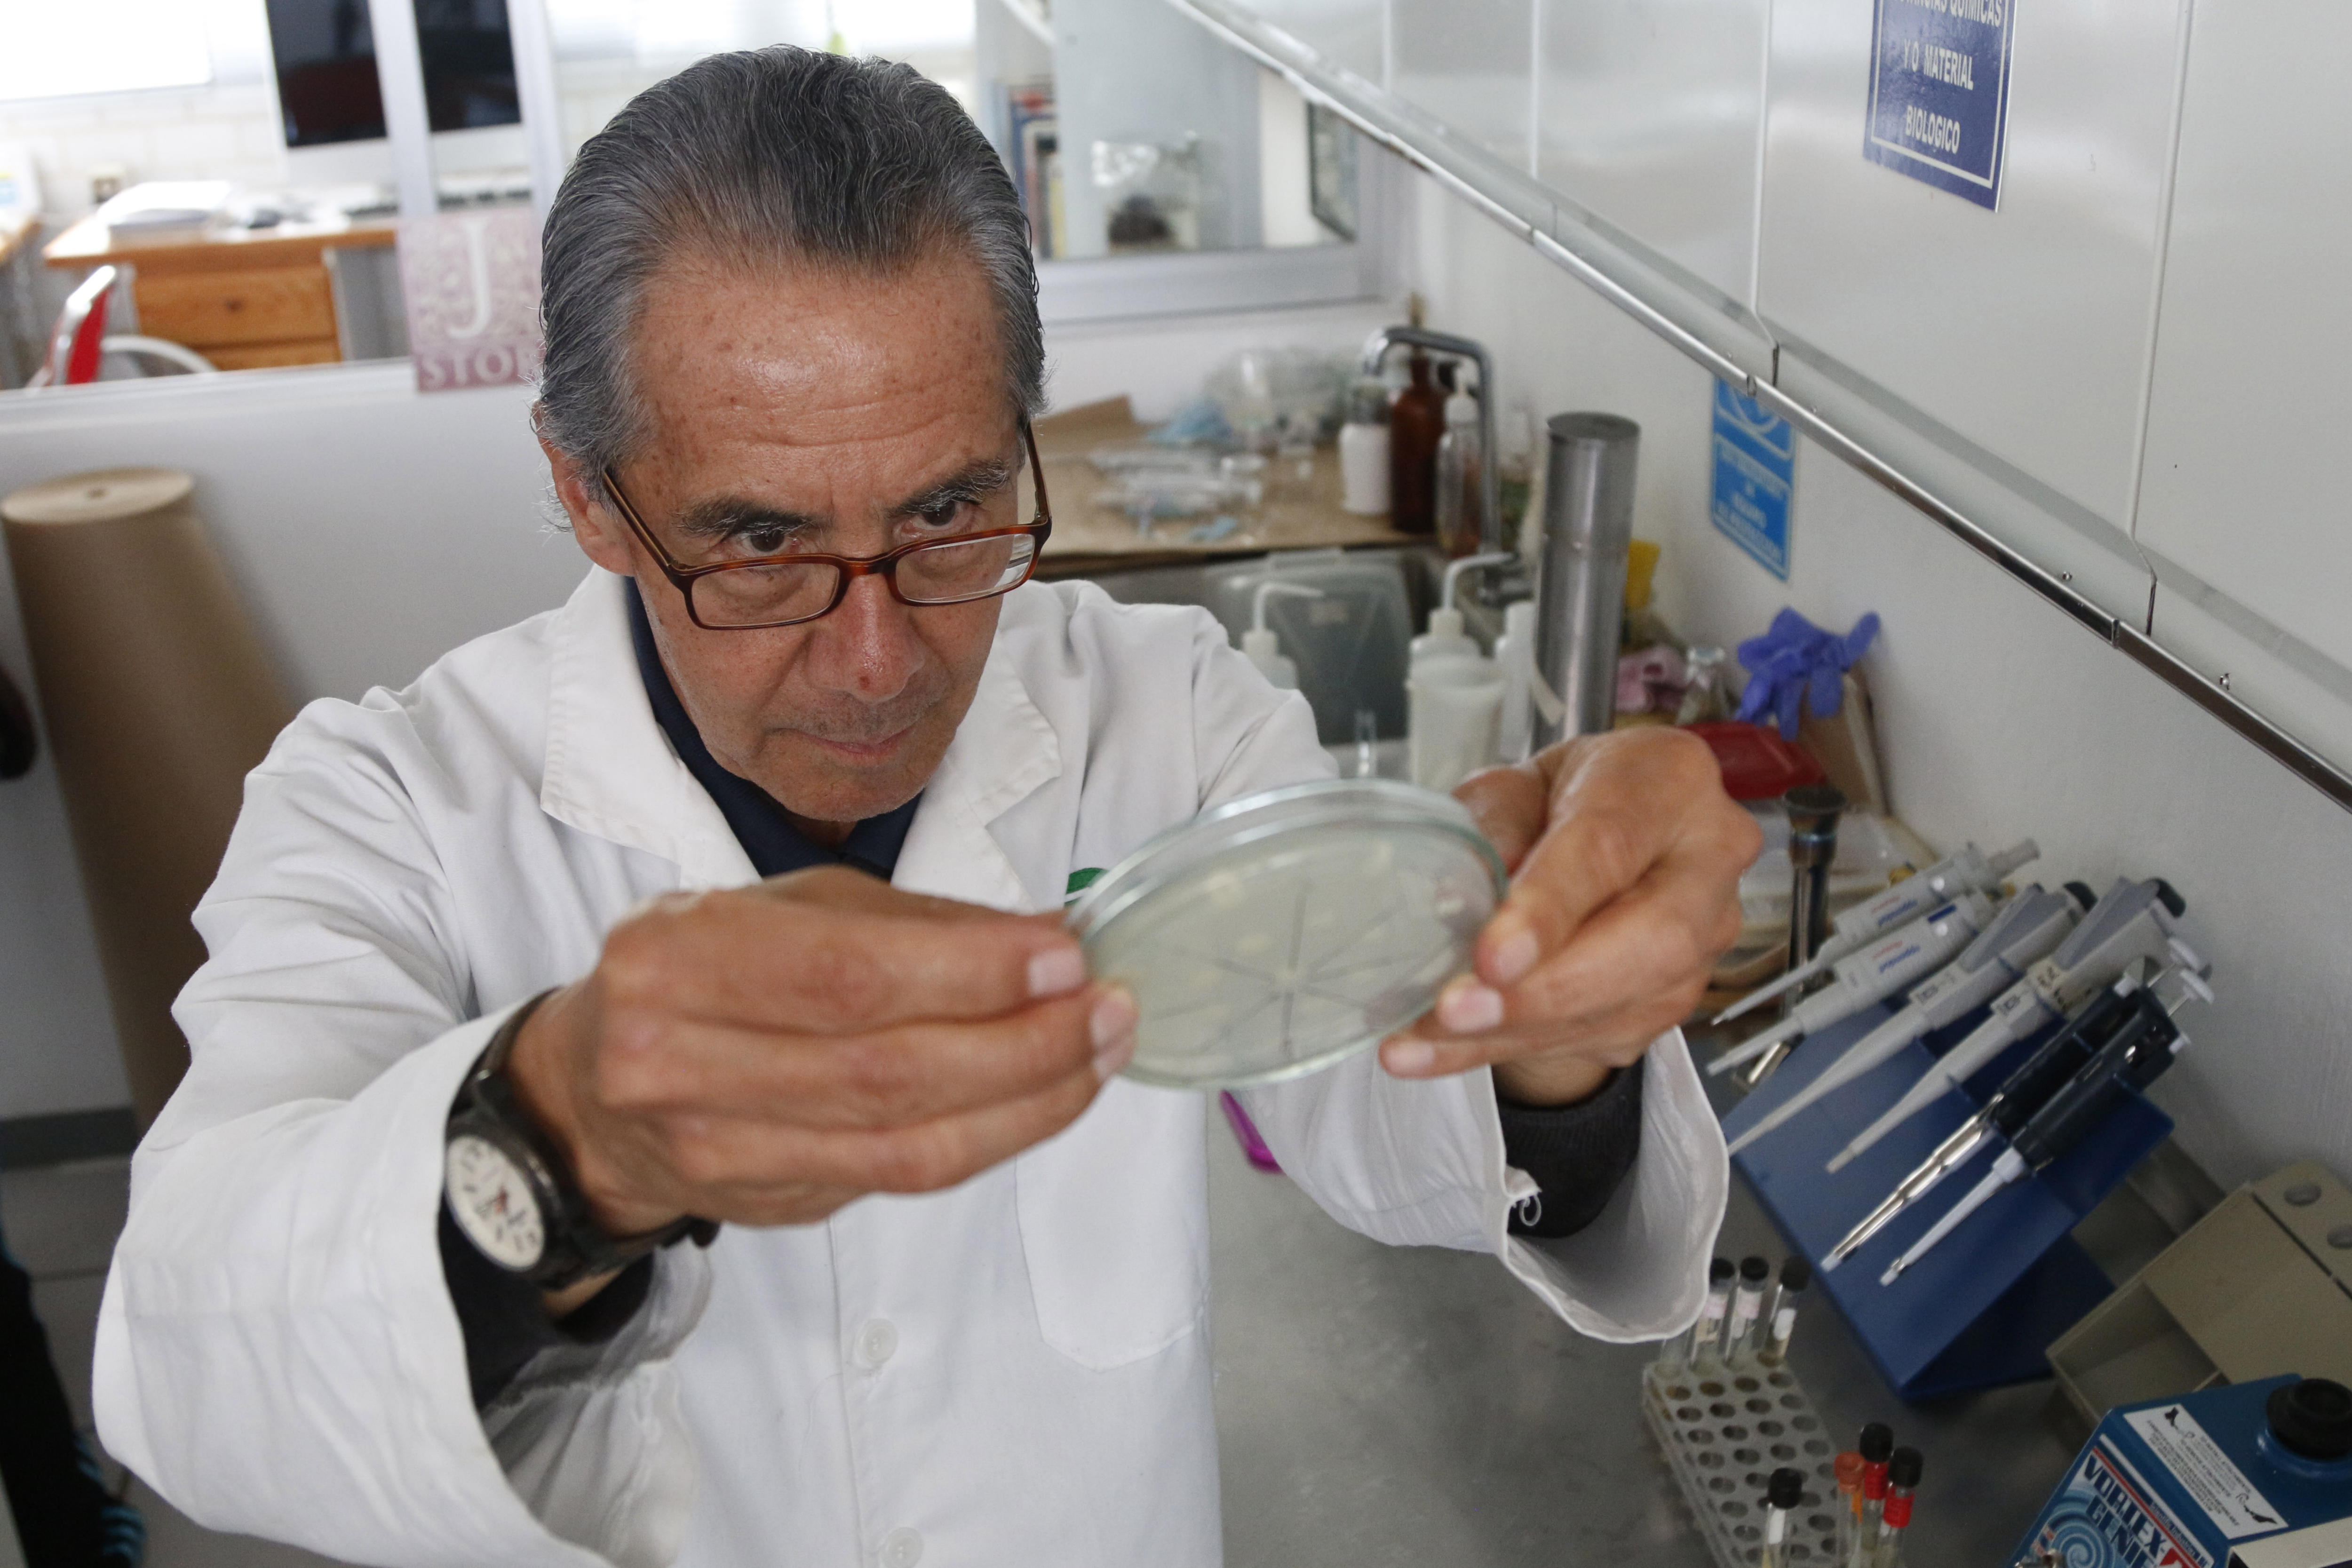  Investigador mexicano crea antibiótico con piel de rana